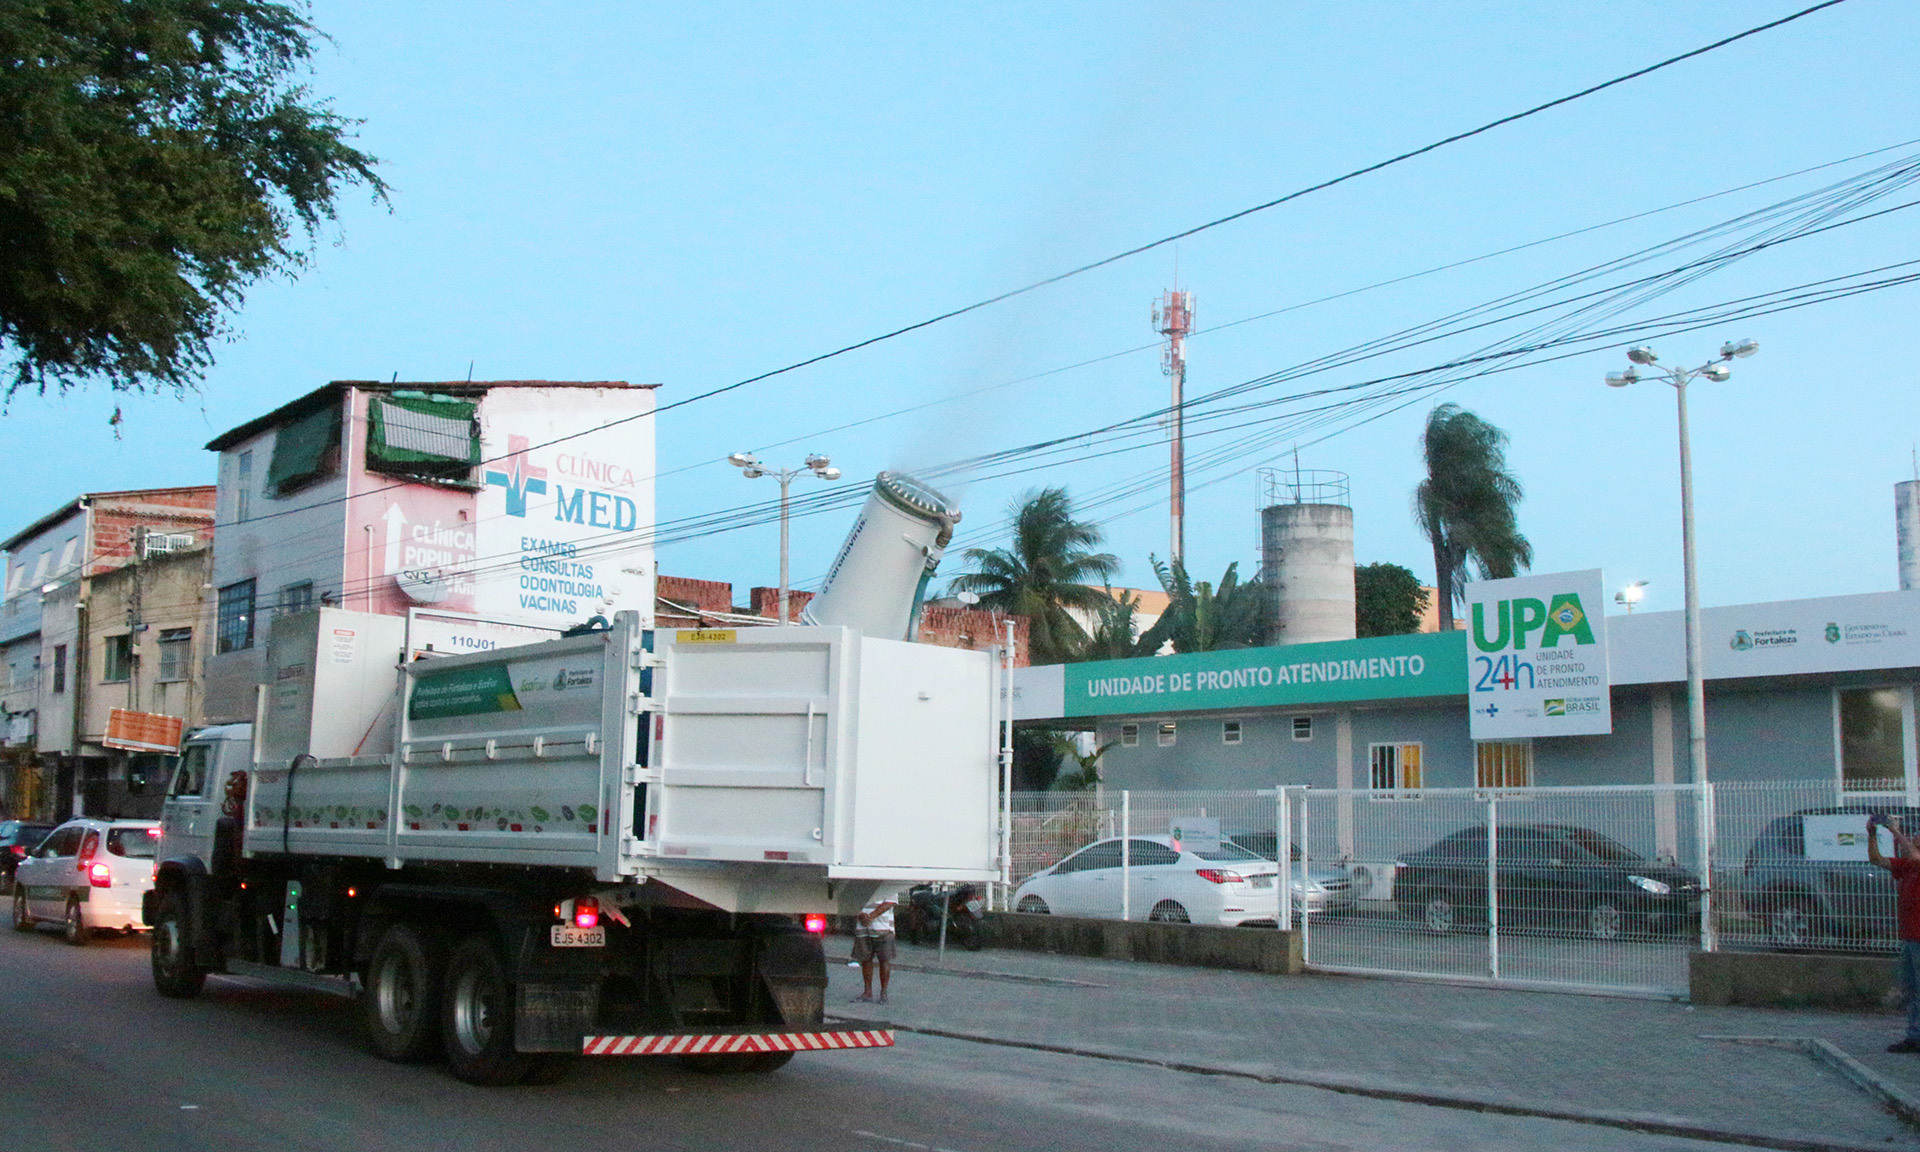 caminhão pulverizando produto em frente a UPA